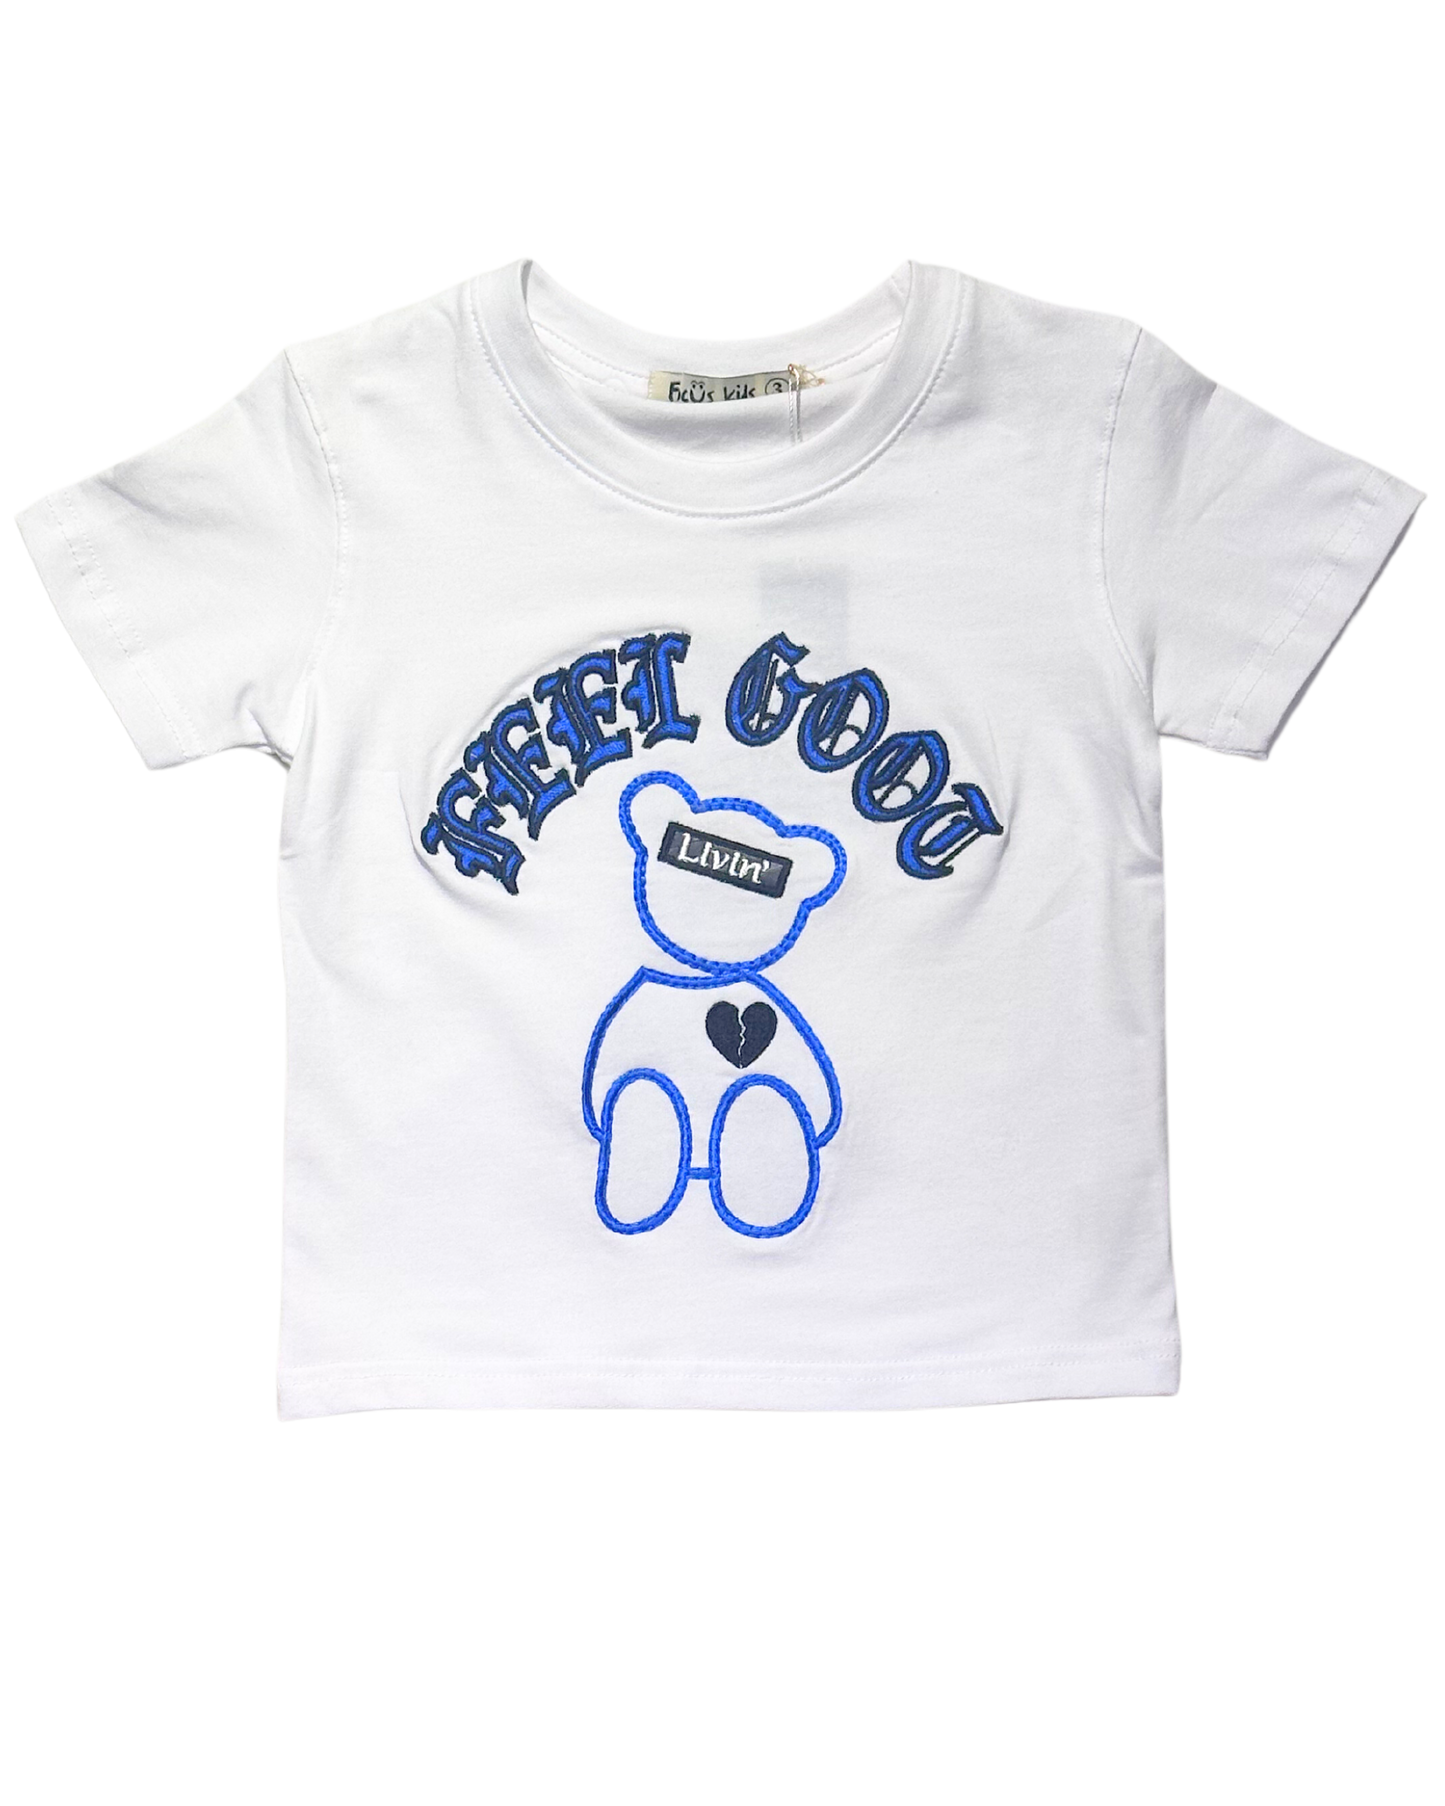 Kids Feel Good Shirt 80525K